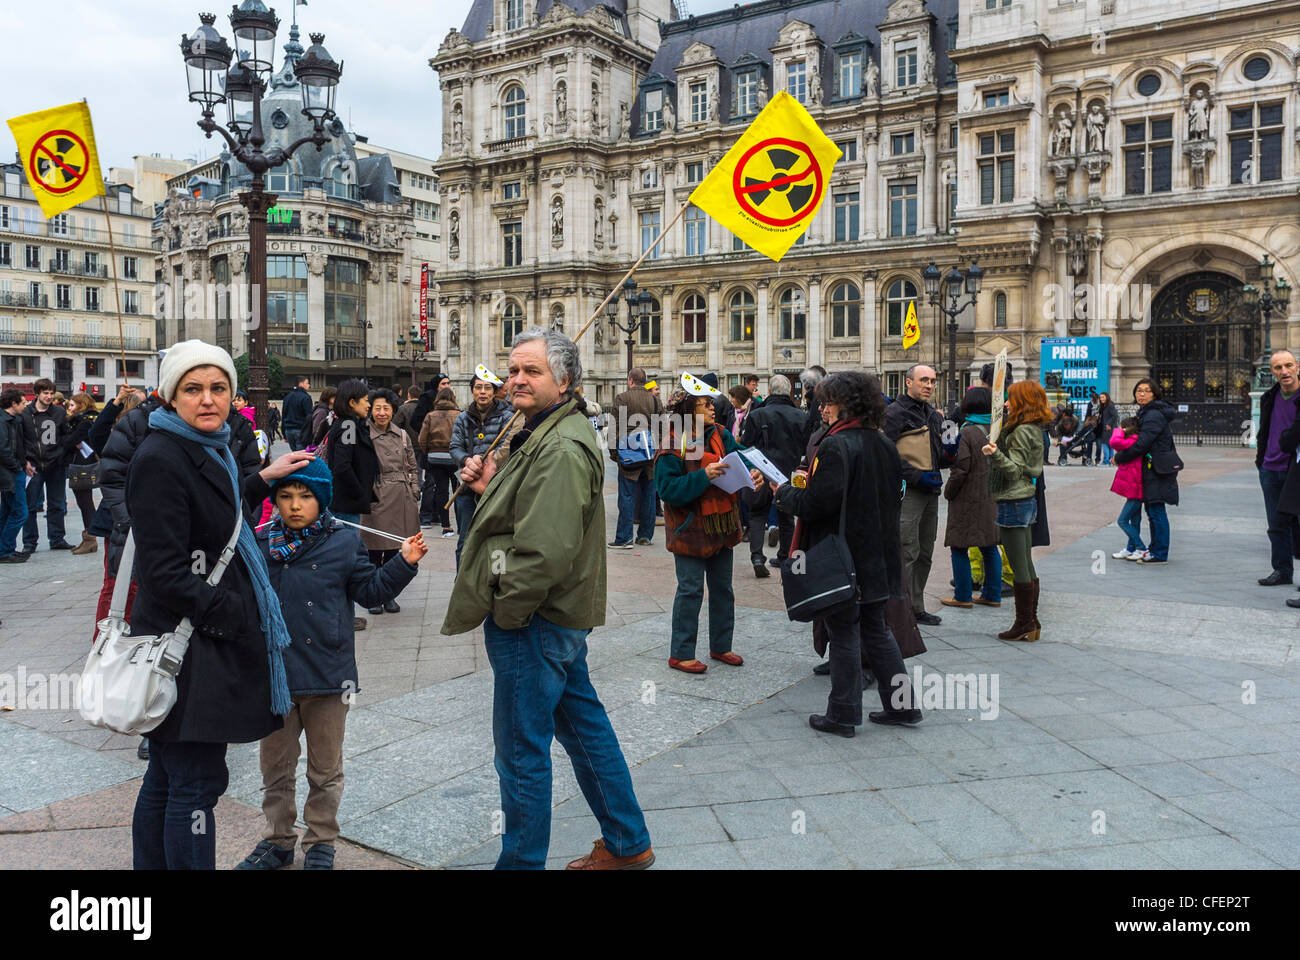 Parigi, Francia, attivisti anti-energia nucleare in occasione dell'anniversario del disastro di Fukushima, protesta per l'energia nucleare Foto Stock